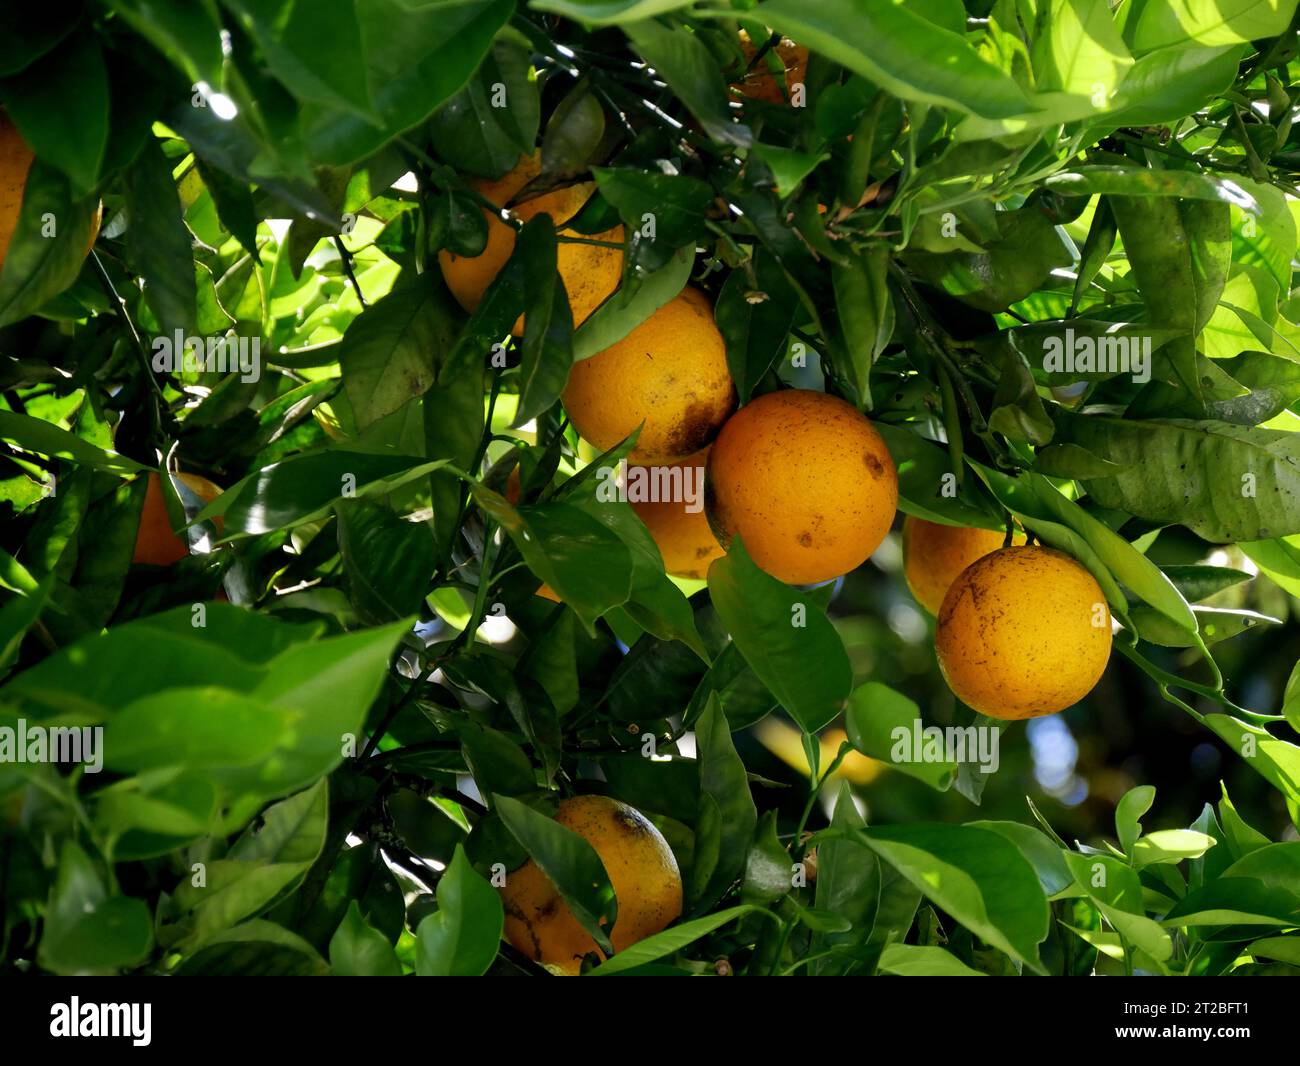 Bitter orange : Fruit of citrus aurantium in La Reunion in the tree Stock Photo